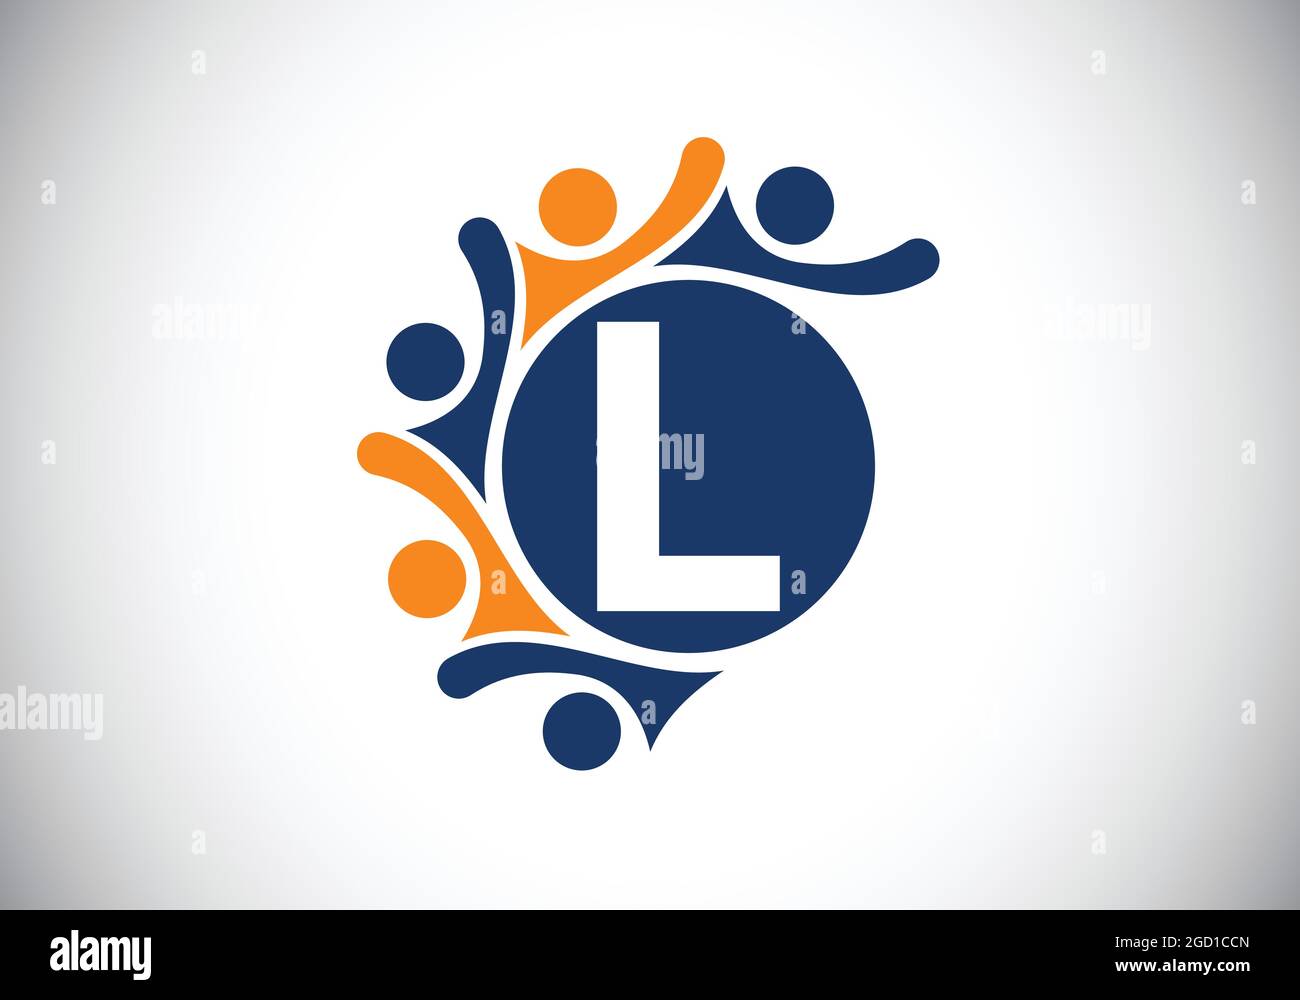 Initial L Monogramm Alphabet mit Menschen verbinden. Team, Zusammenarbeit Logo Zeichen Symbol. Schrift-Emblem. Logo für die Zusammenarbeit im Unternehmen Stock Vektor